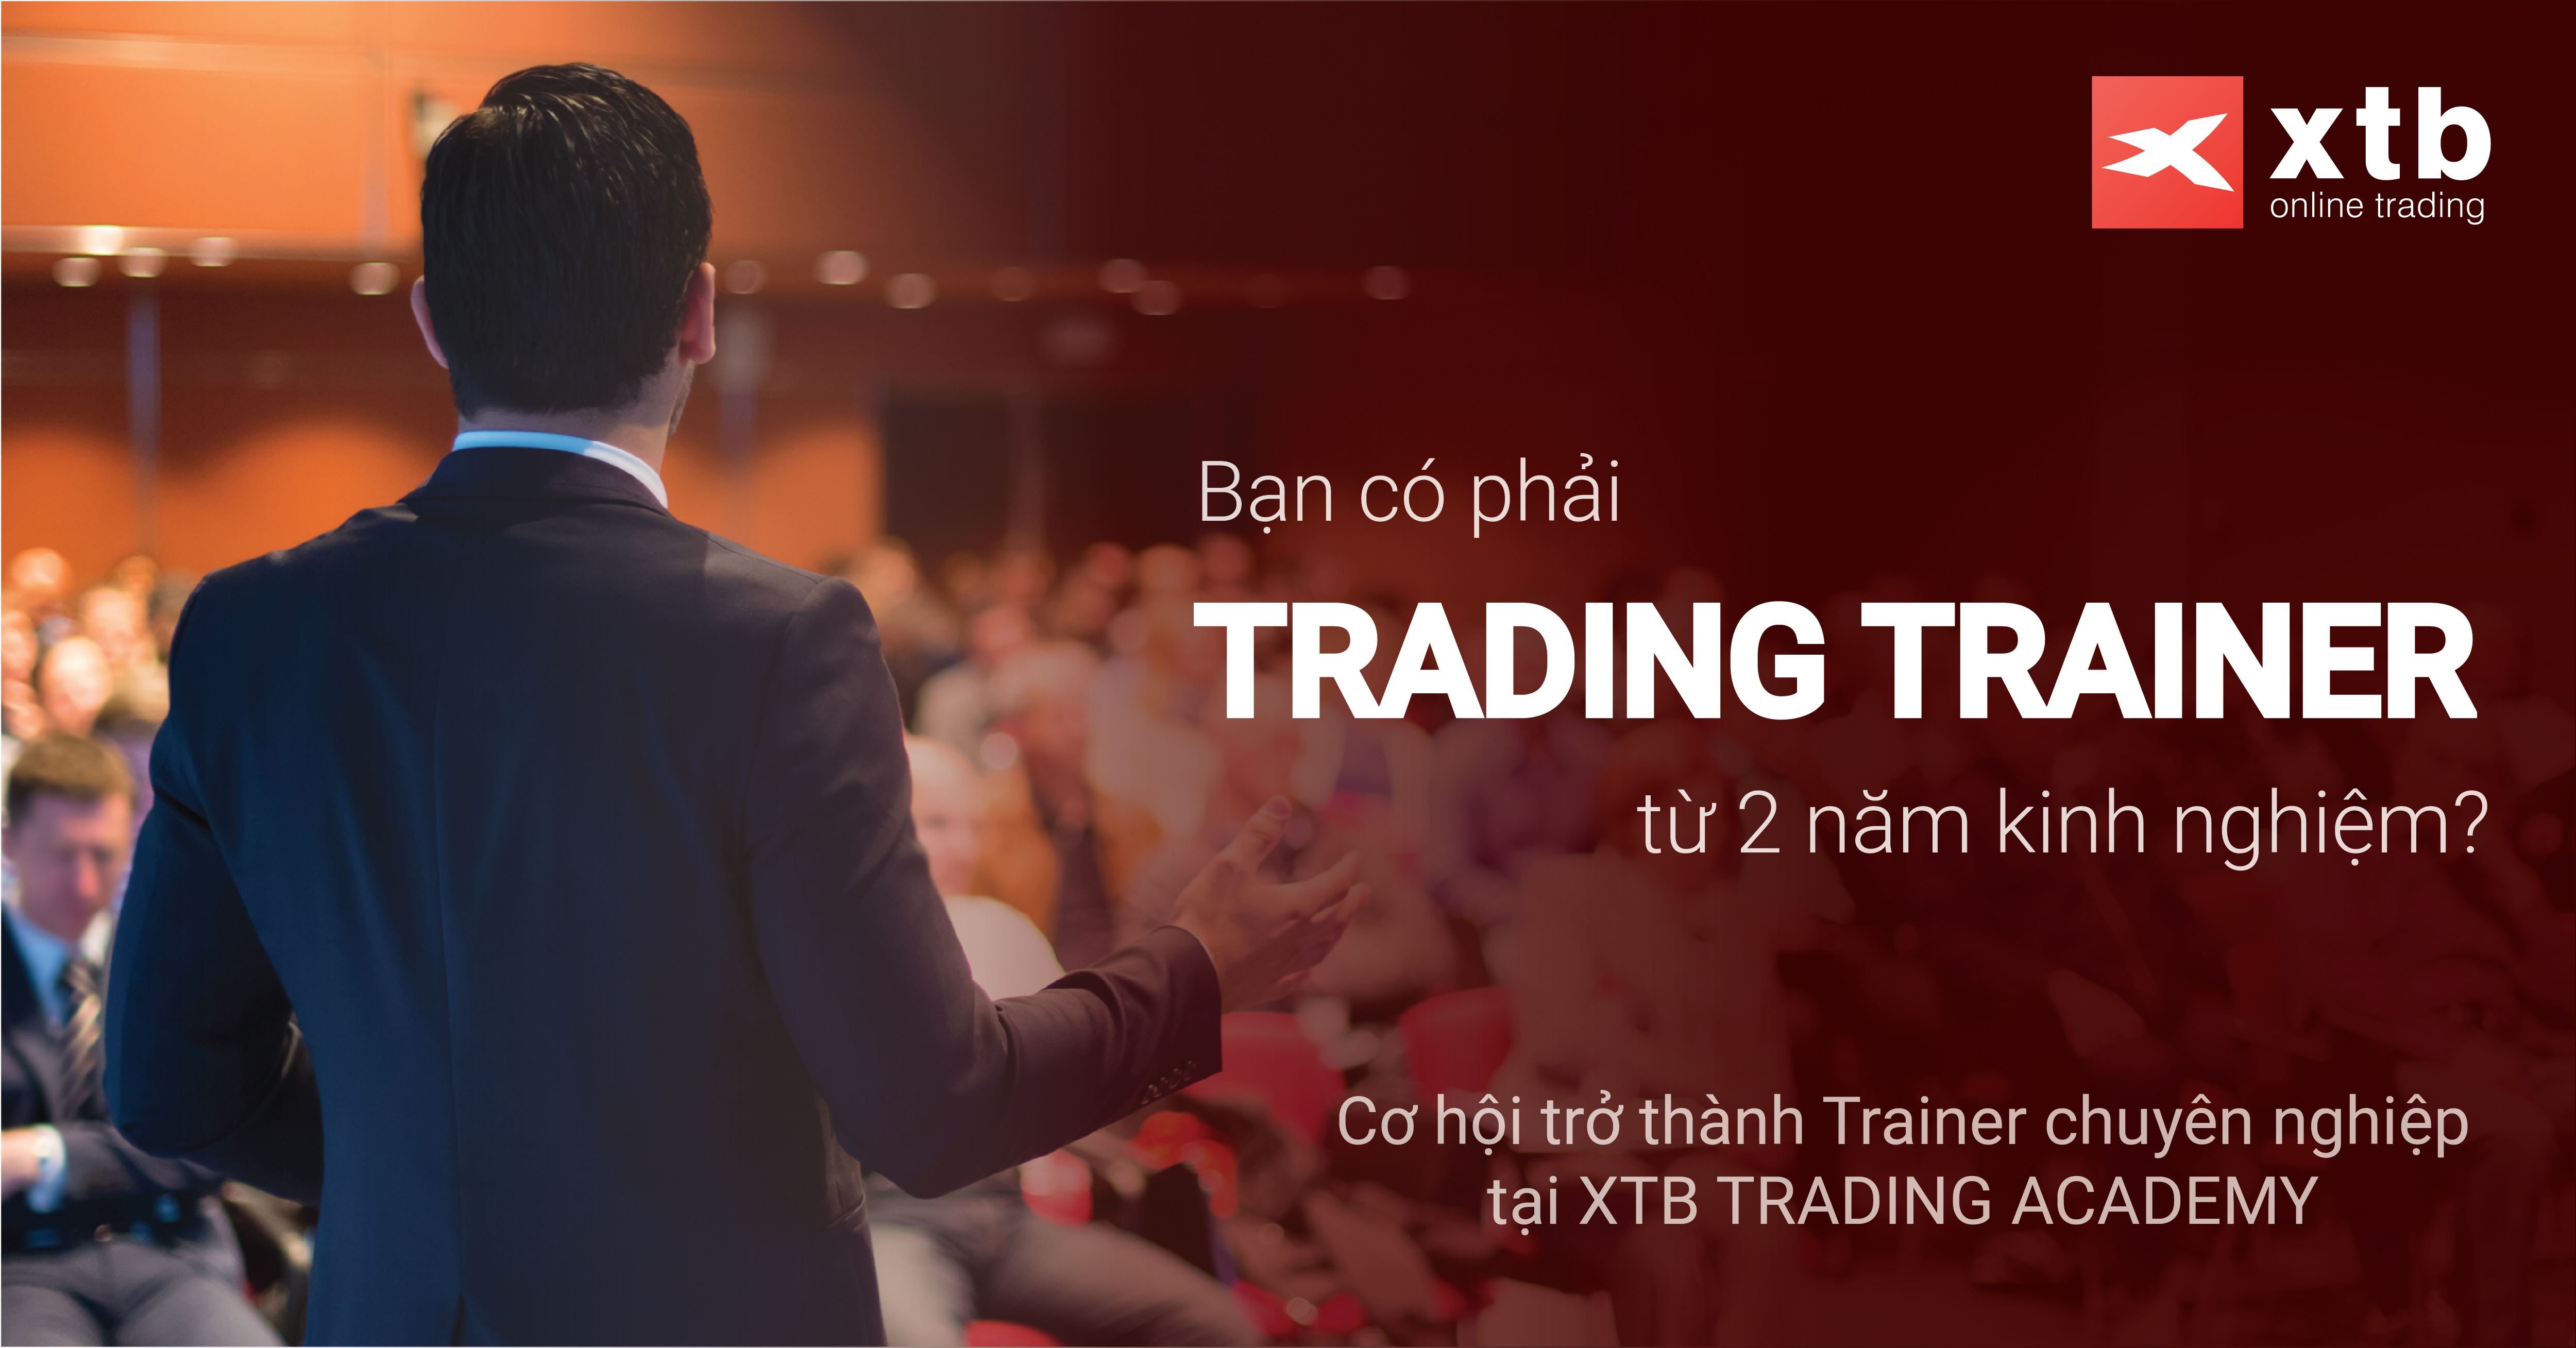 Cơ hội trở thành TRAINER chuyên nghiệp tại XTB Trading Academy